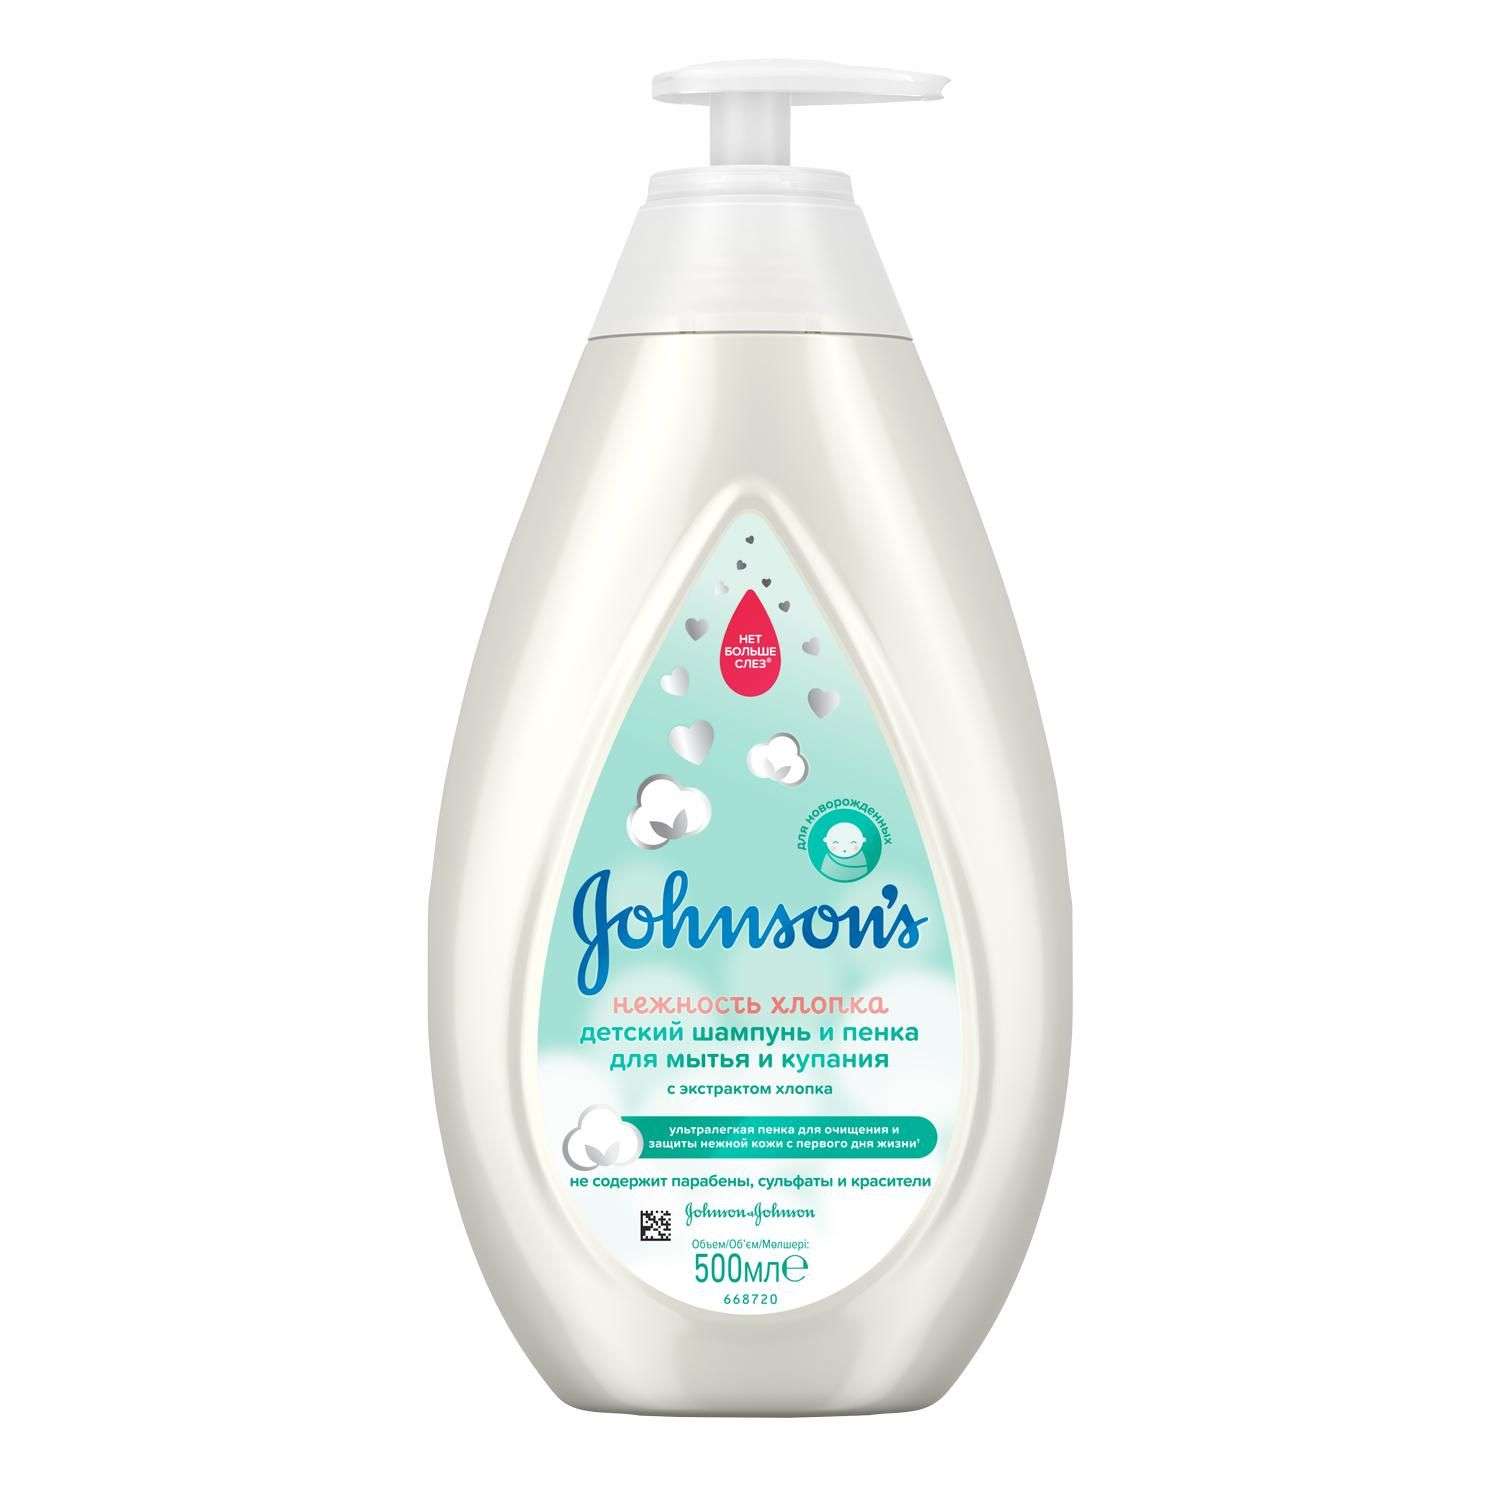 Шампунь-пенка для мытья и купания Johnson's Нежность хлопка детский 500мл - фото 1